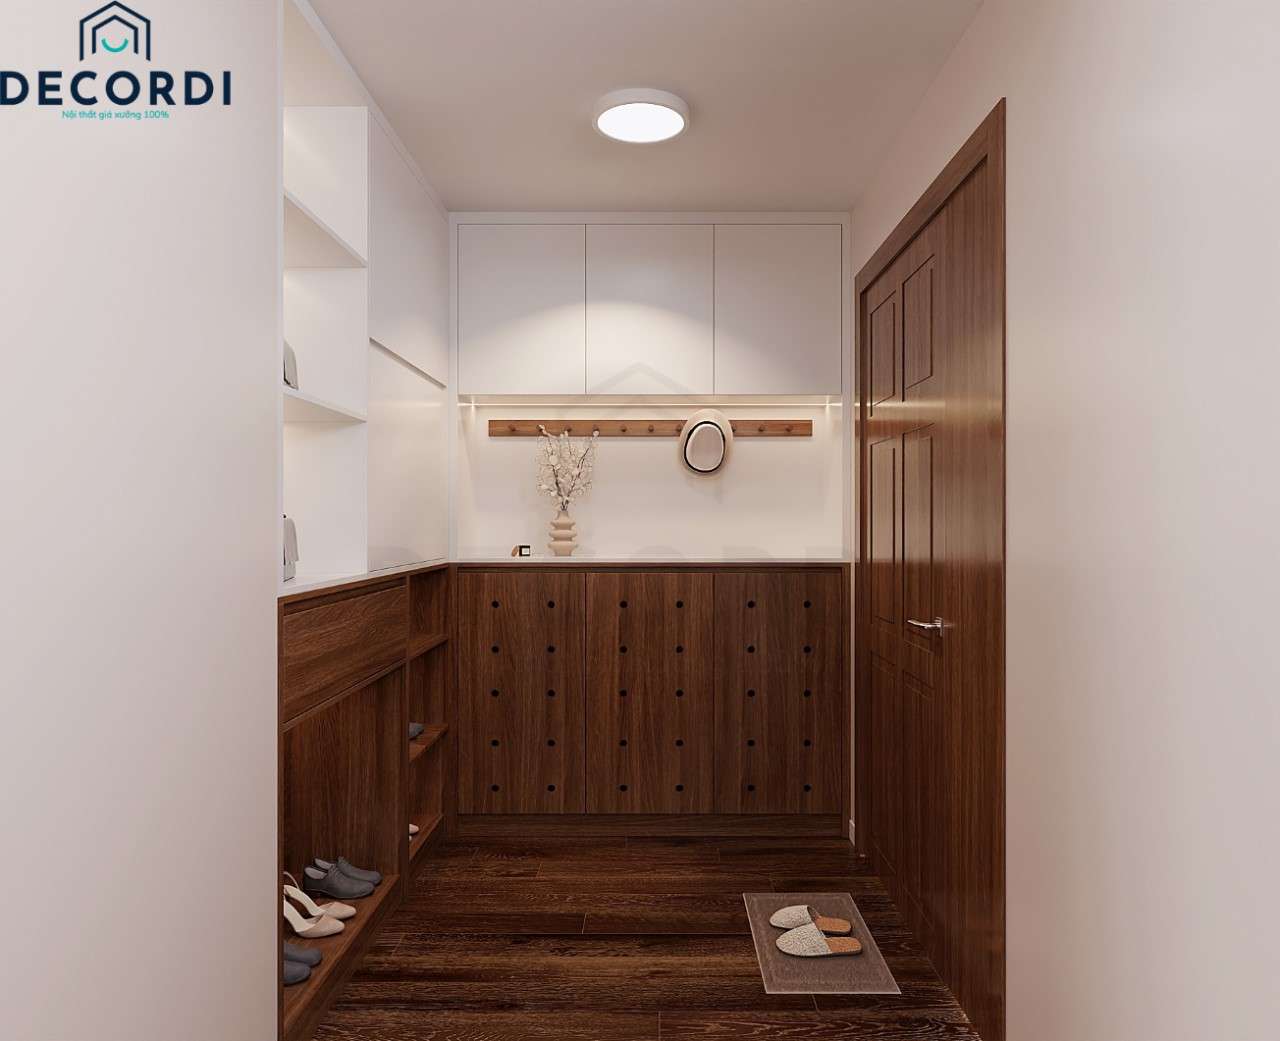 Lối vào nhà chung cư được thiết kế tủ giày gỗ công nghiệp chữ L phối màu gỗ và trắng hiện đại